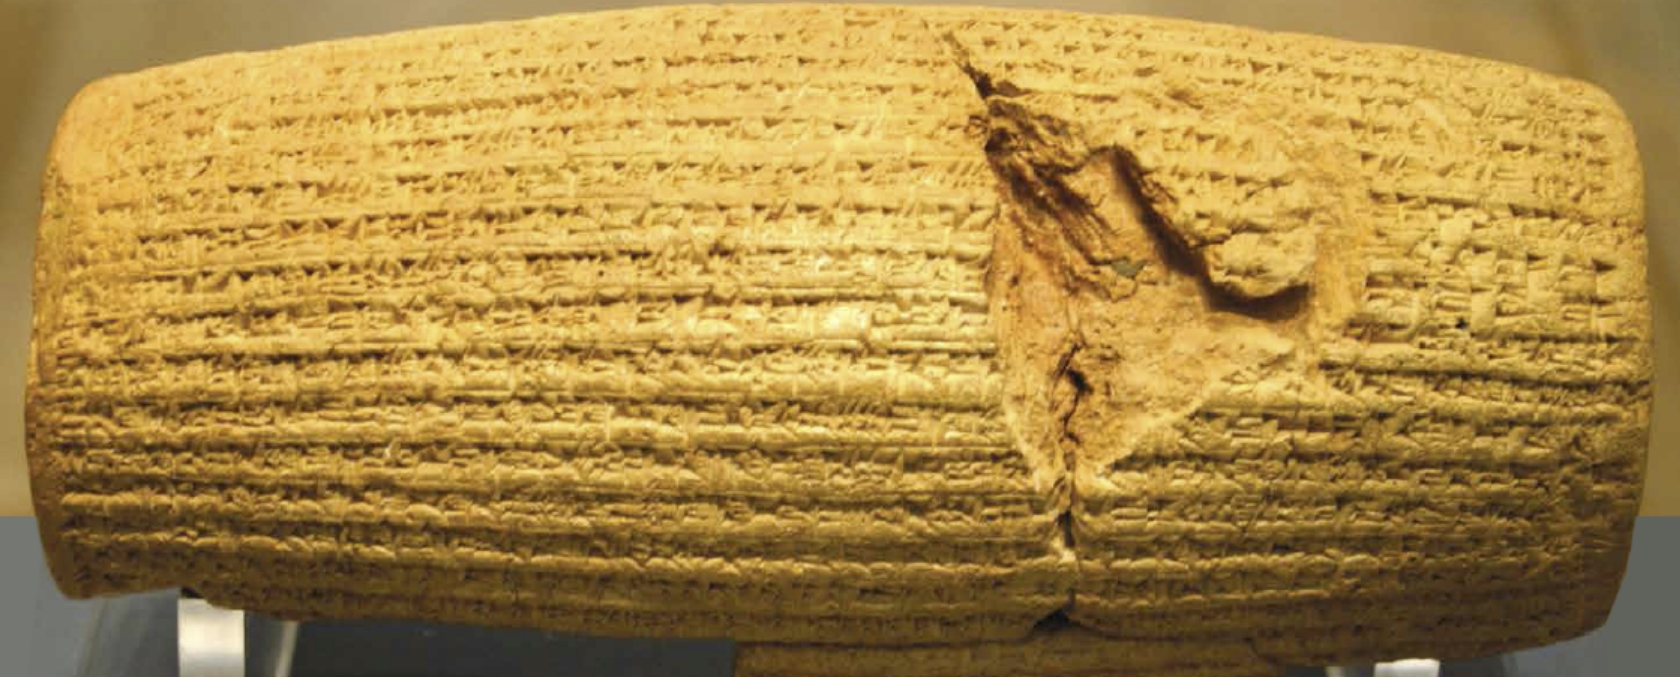 גליל הצהרת כורש, שנמצא בעיר בבל העתיקה ומוצג כיום במוזיאון הבריטי